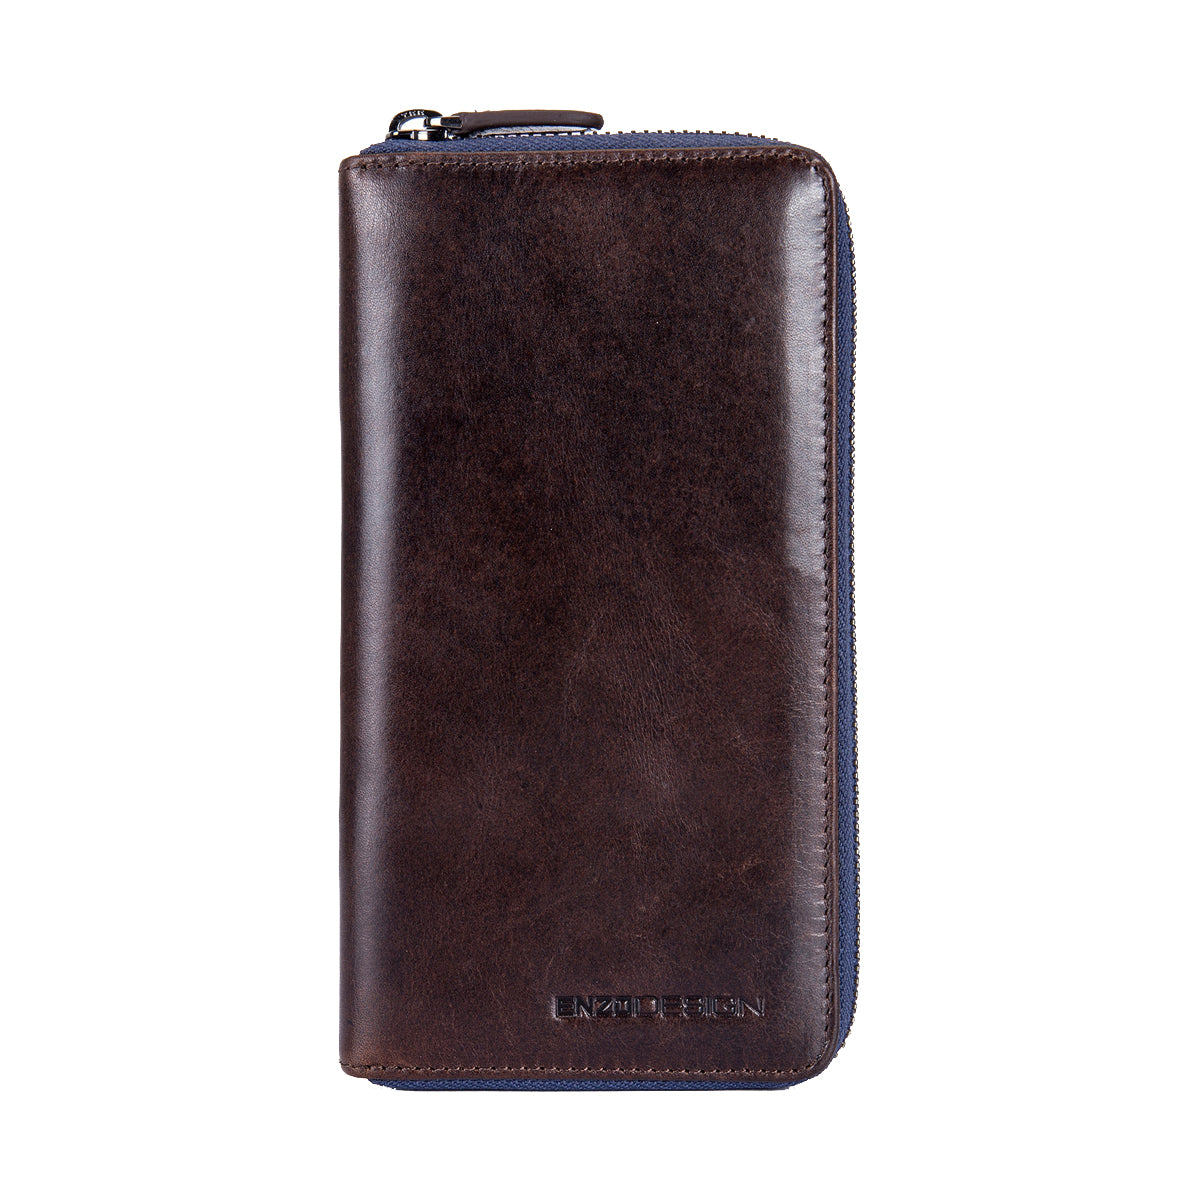 EnzoDesign Brown Leather Zip Around Wallet 